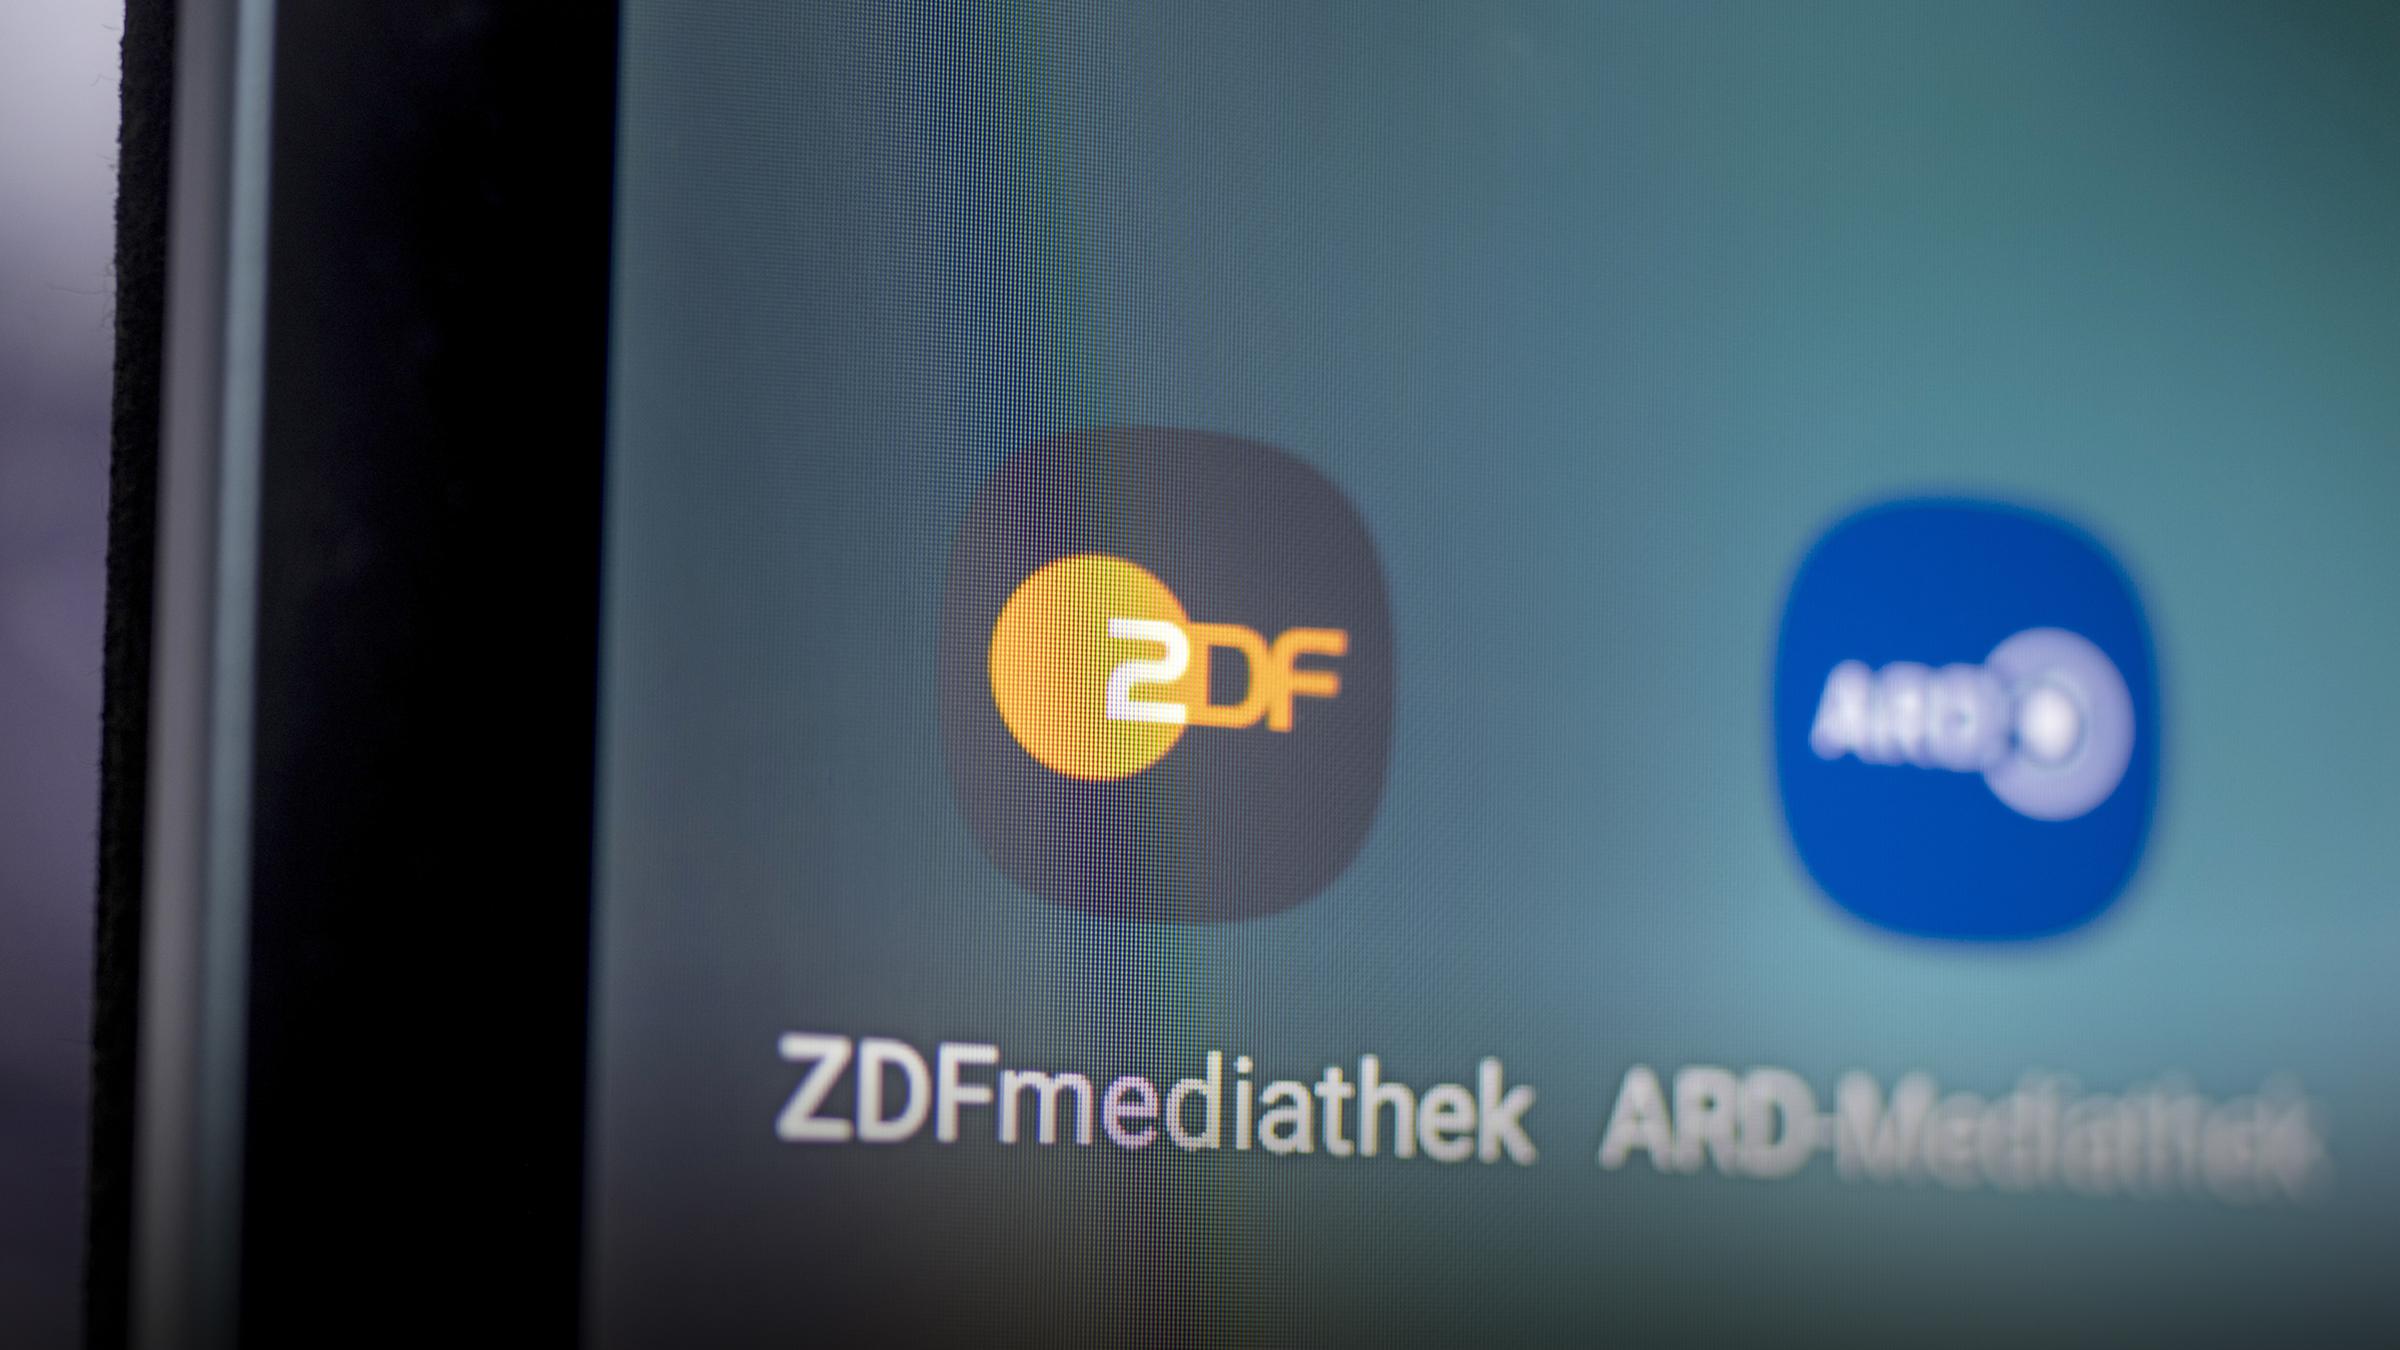 Himmler ARD- und ZDF-Mediatheken vernetzen sich weiter